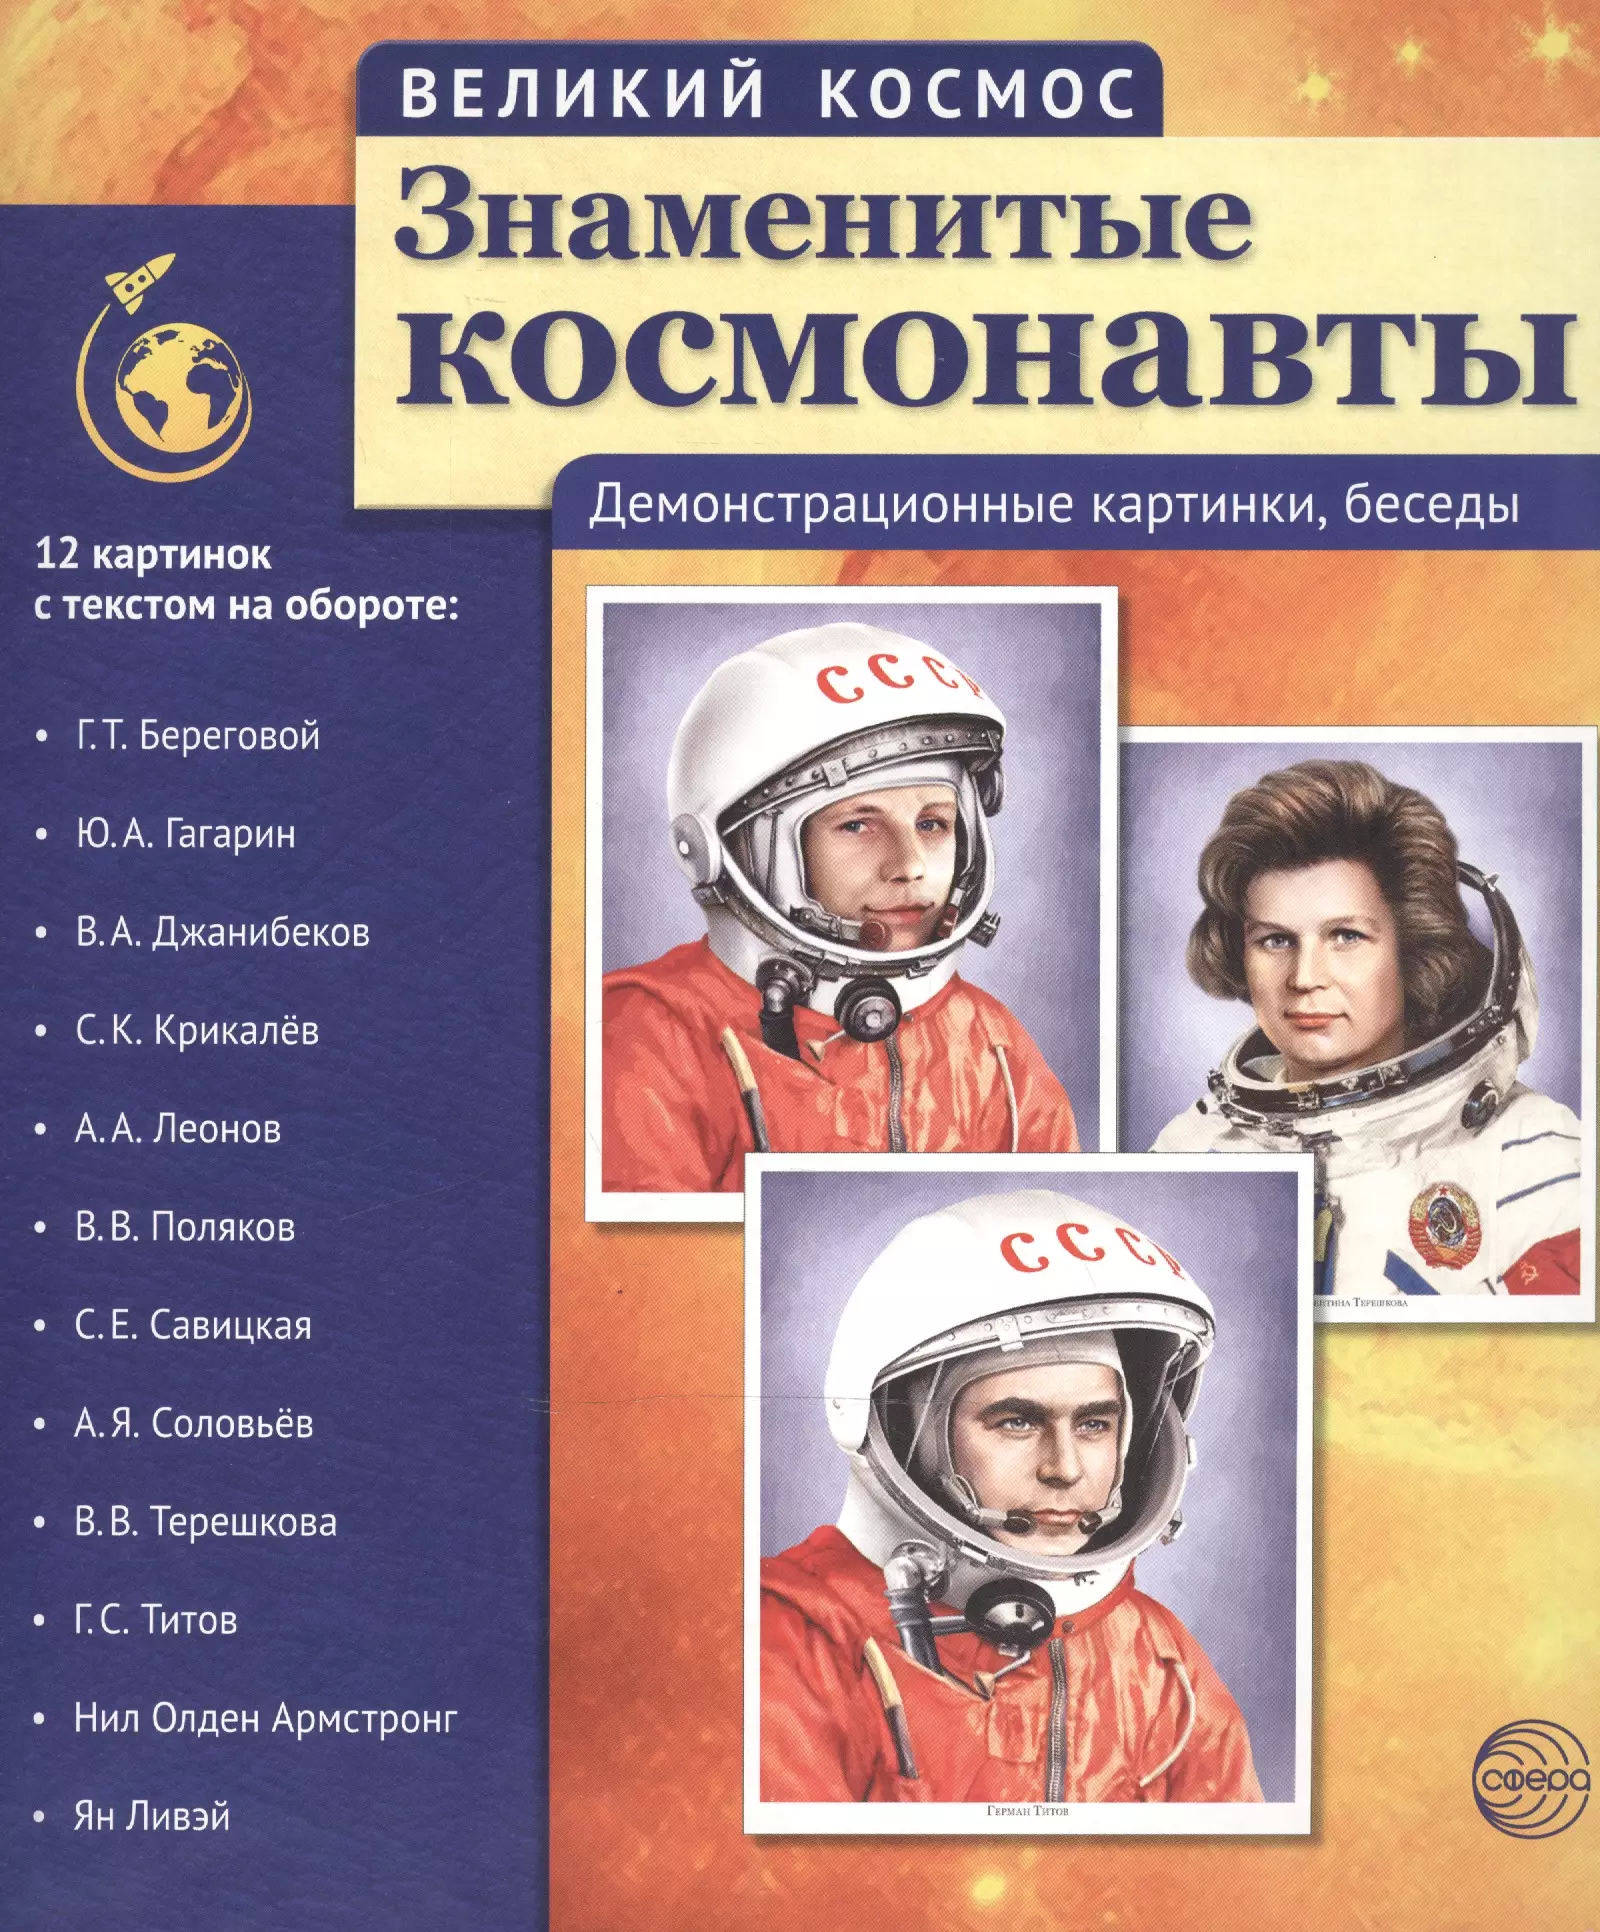 Великий космос. Знаменитые космонавты. 12 демонстр. картинок с текстом (210x250 мм) цветкова т знаменитые космонавты